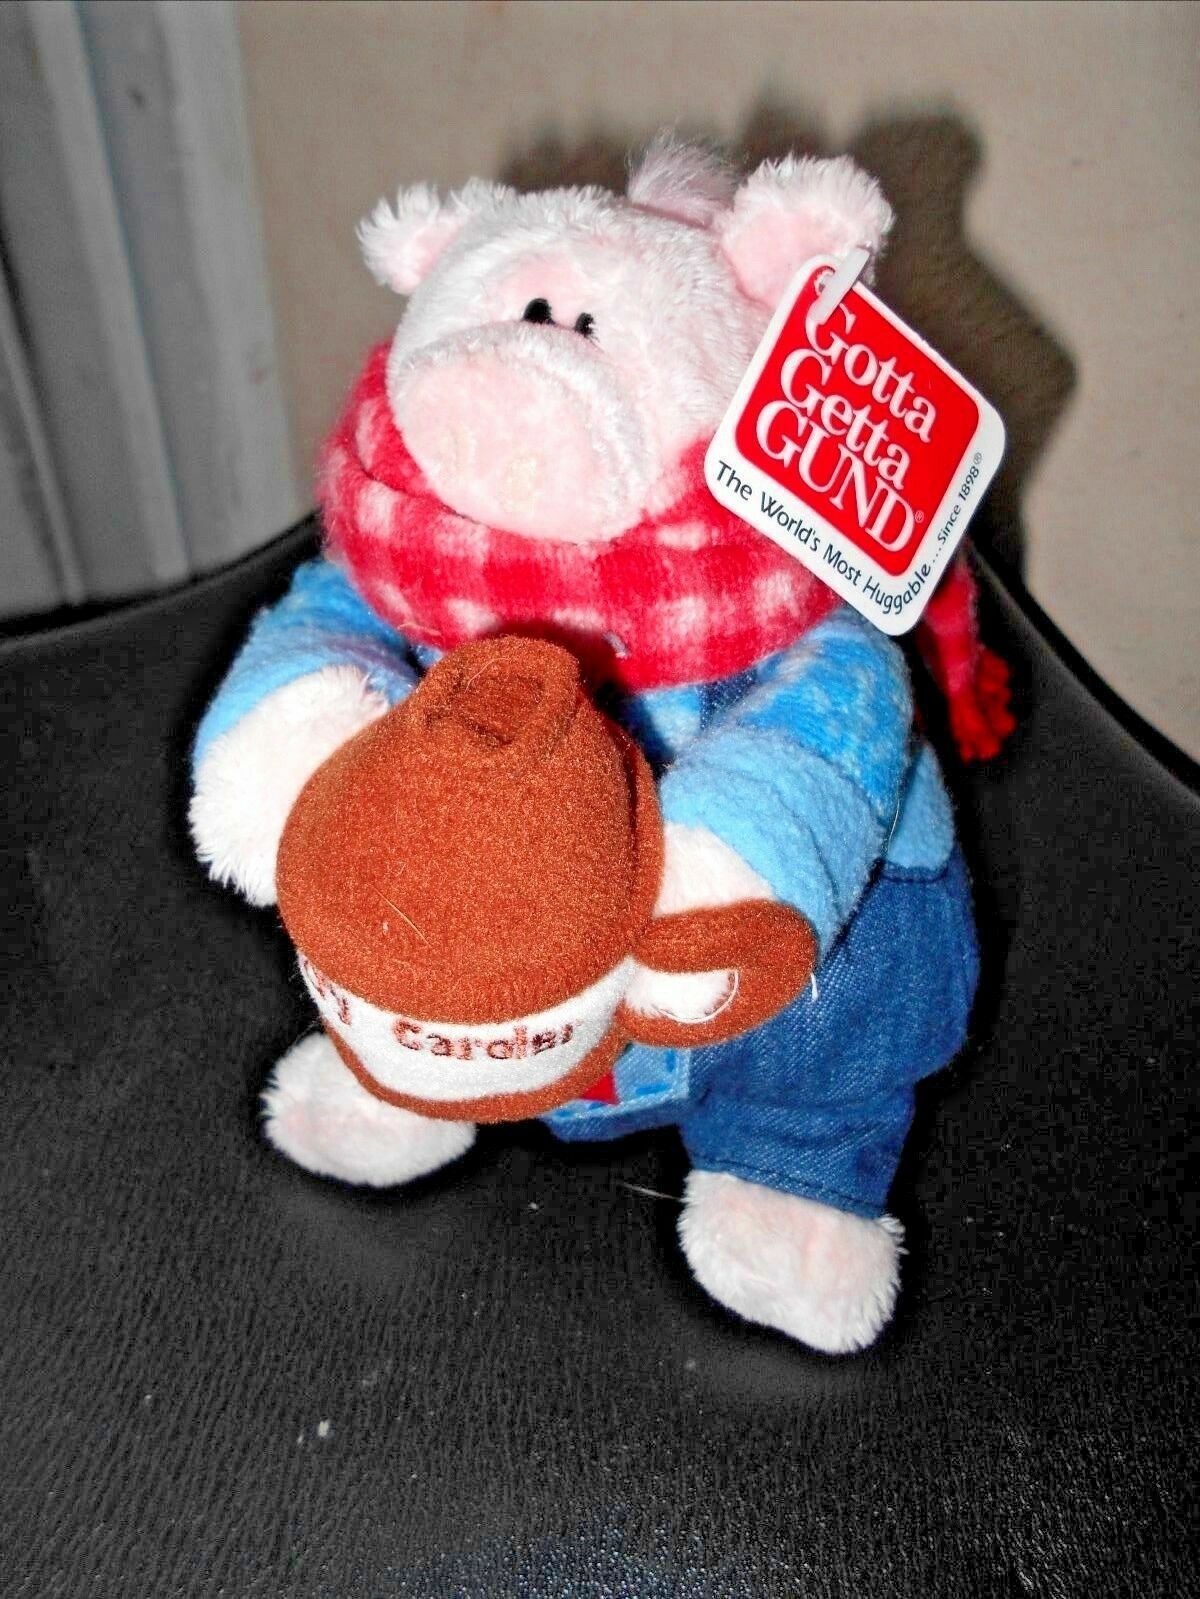 Gund Down On The Farm Stuffed Animal Toy Jug Band Hoggins New 6.5 in Tall 2000 - $14.84